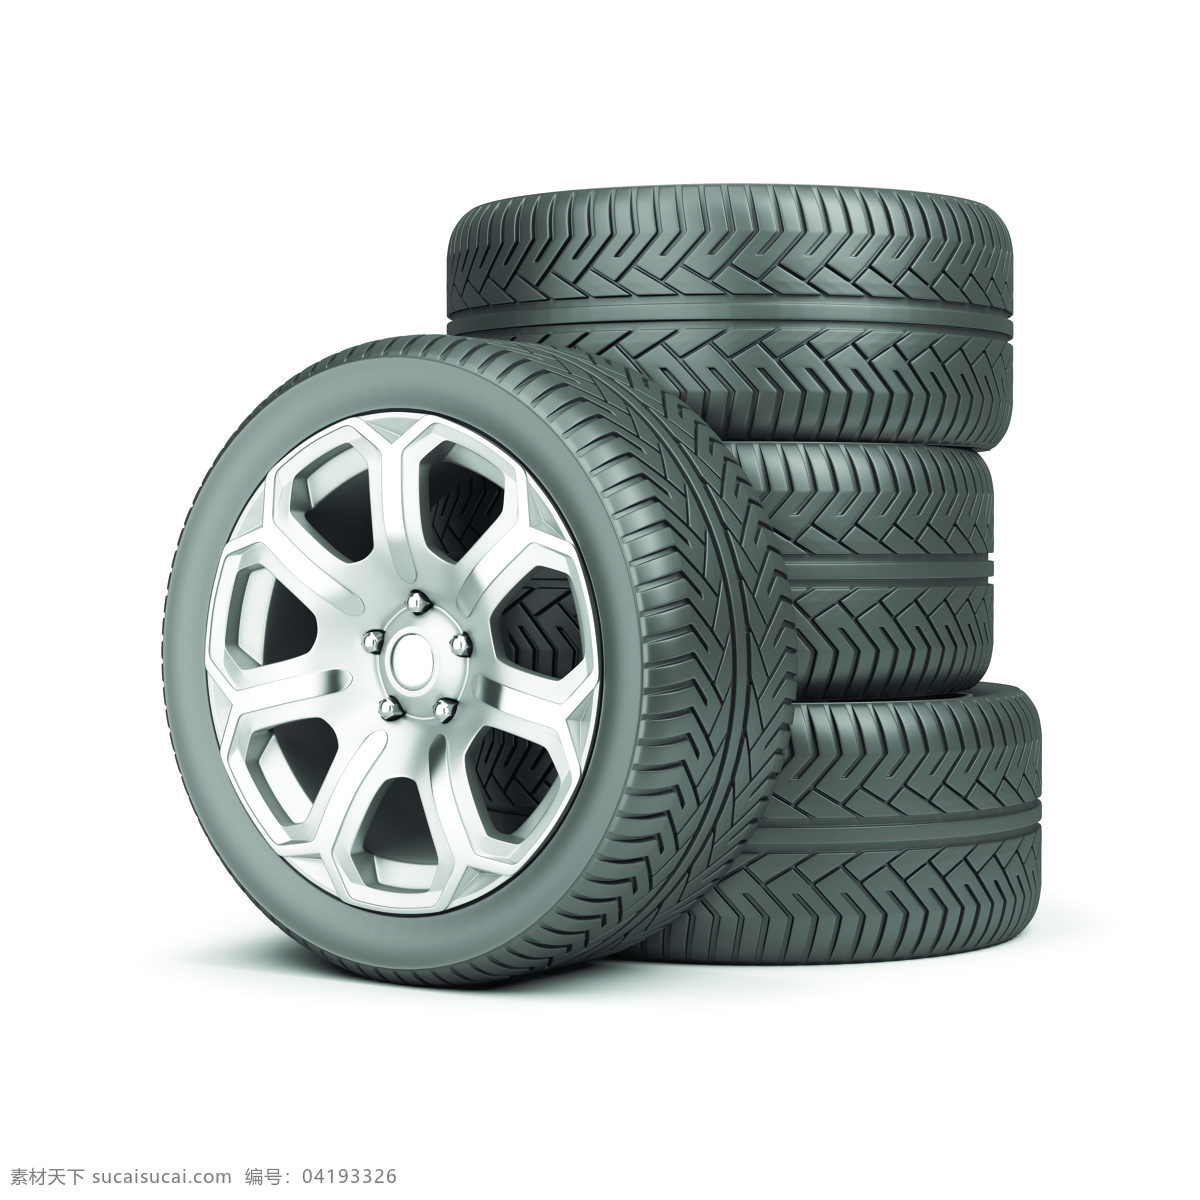 汽车轮胎 轮胎 运输 货车 轮胎摄影 轮胎特写 车轮子 汽车零件 配件 交通工具 现代科技 汽车图片